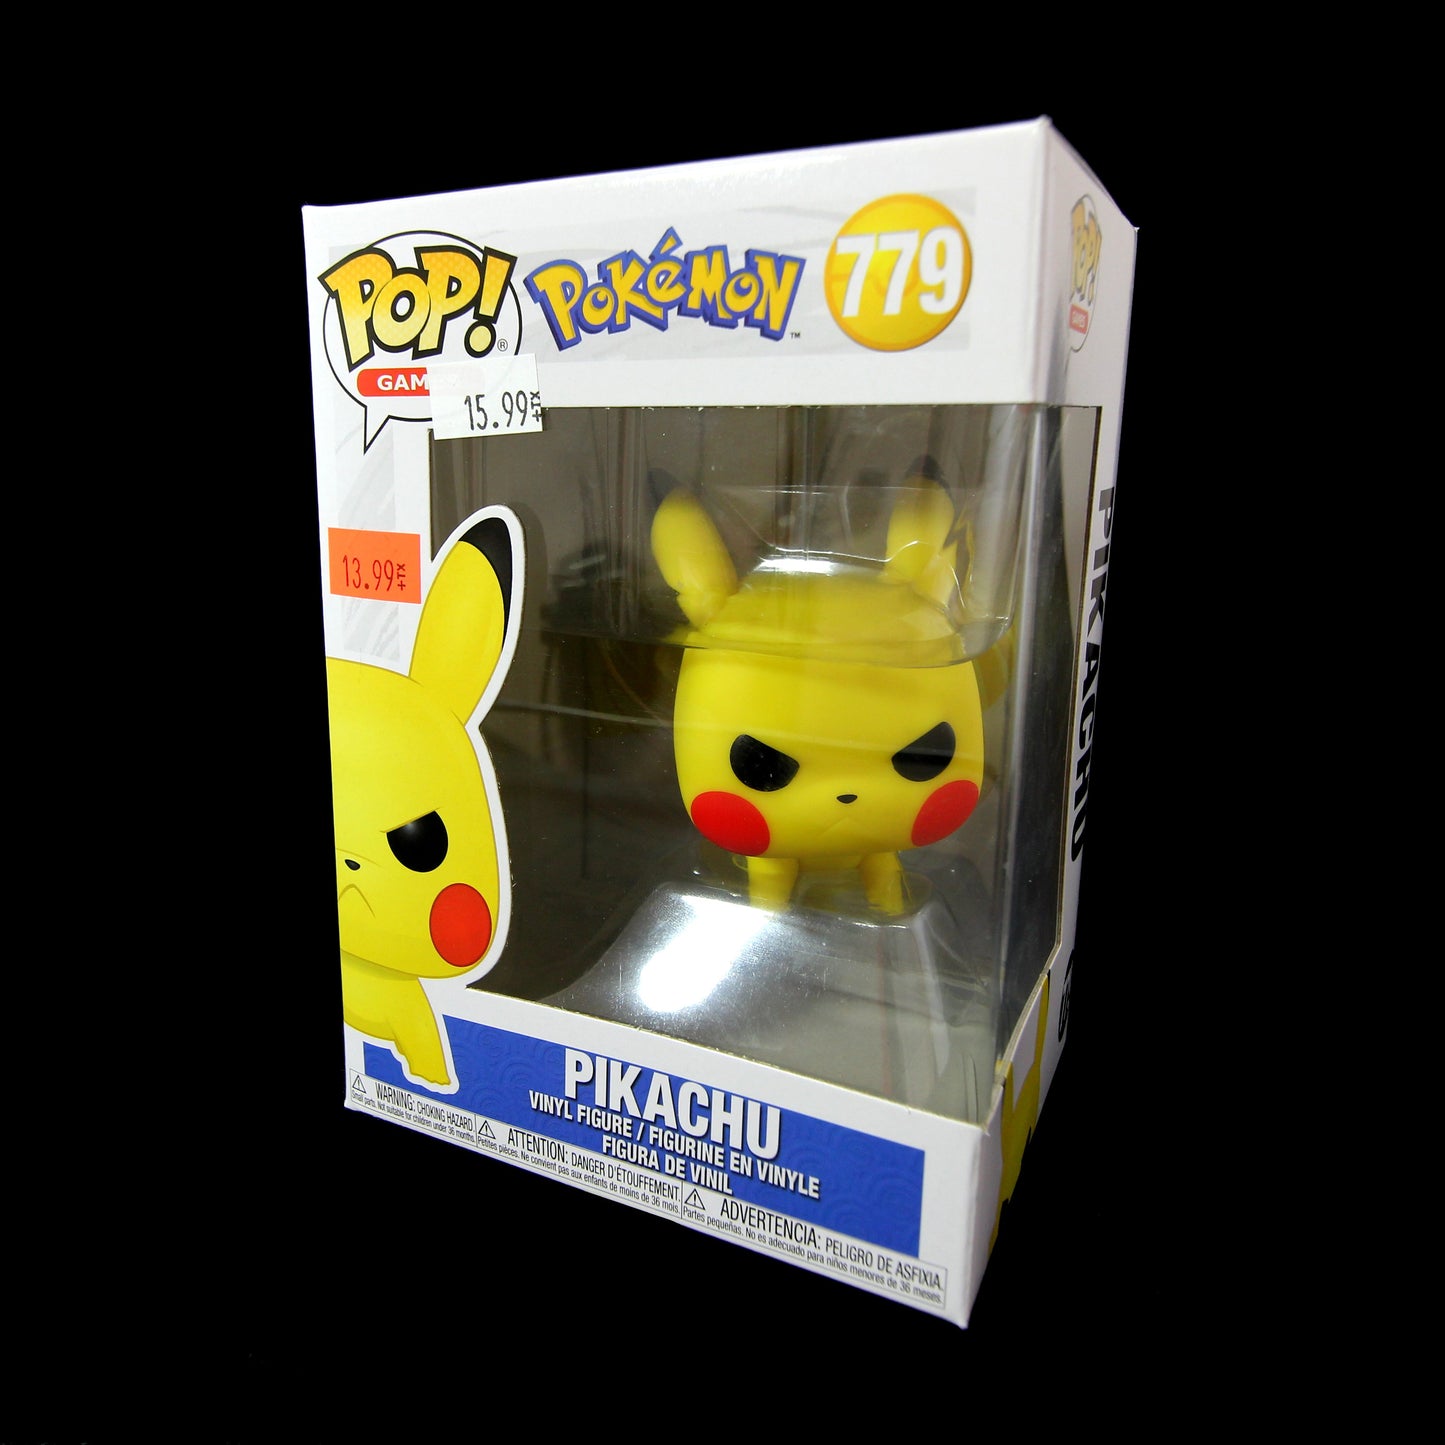 Funko Pop Pokémon Pikachu 779